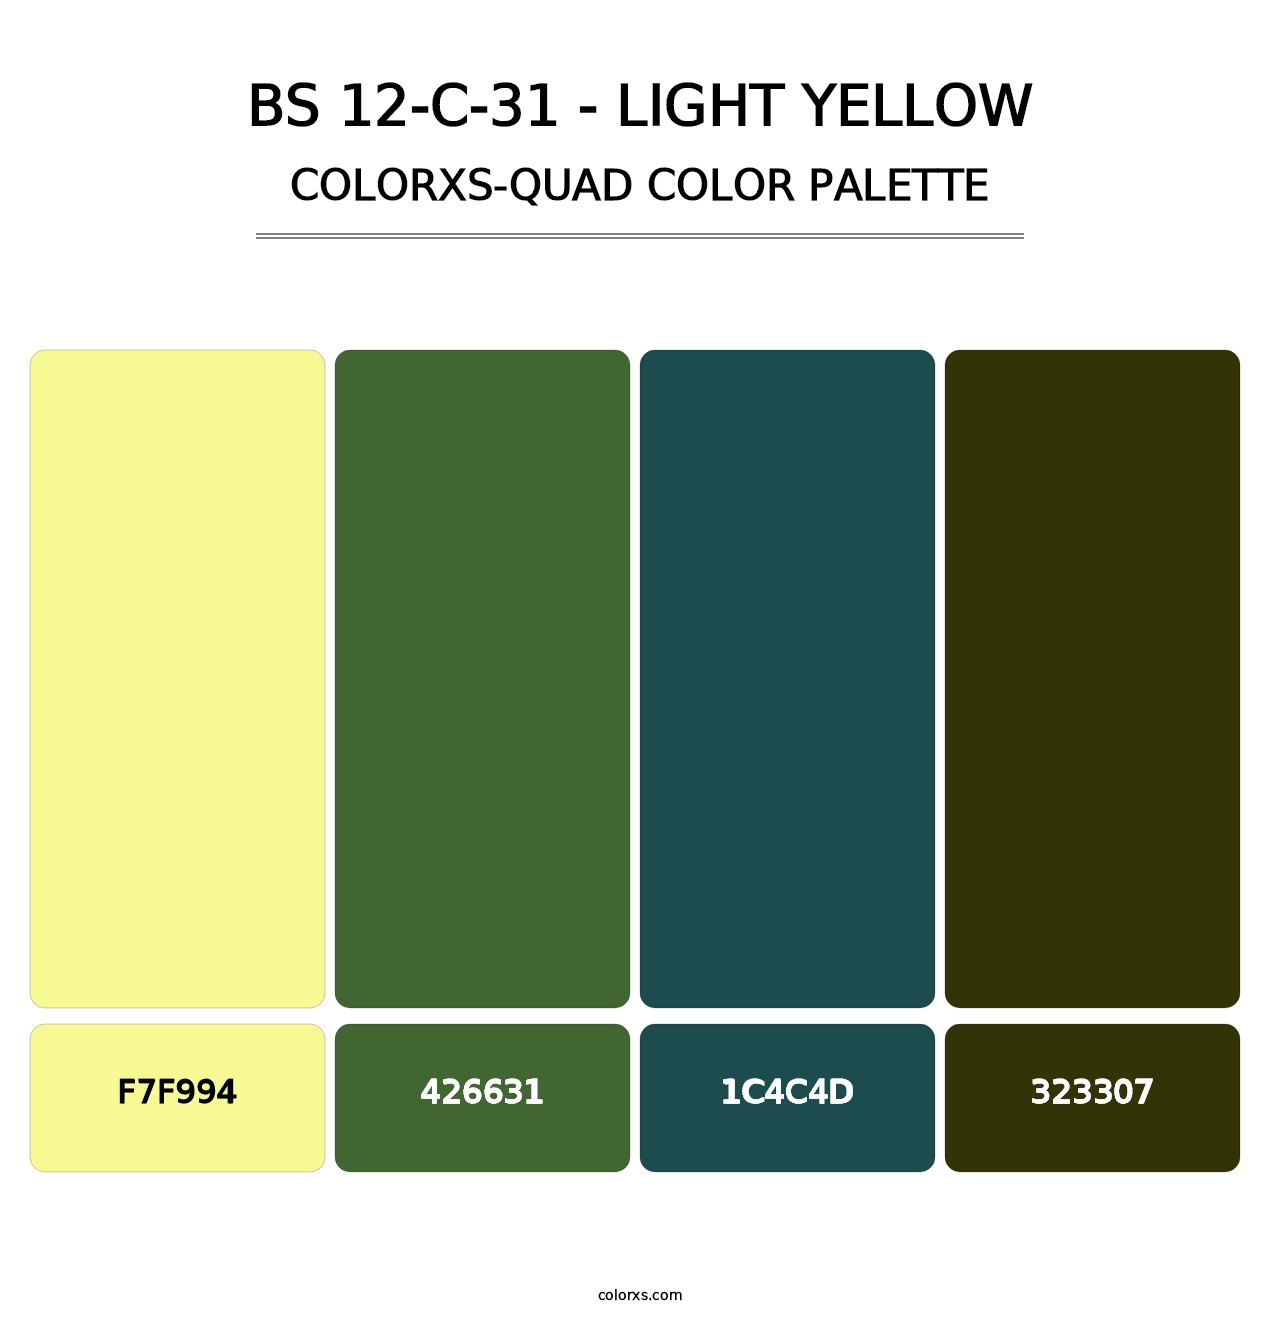 BS 12-C-31 - Light Yellow - Colorxs Quad Palette